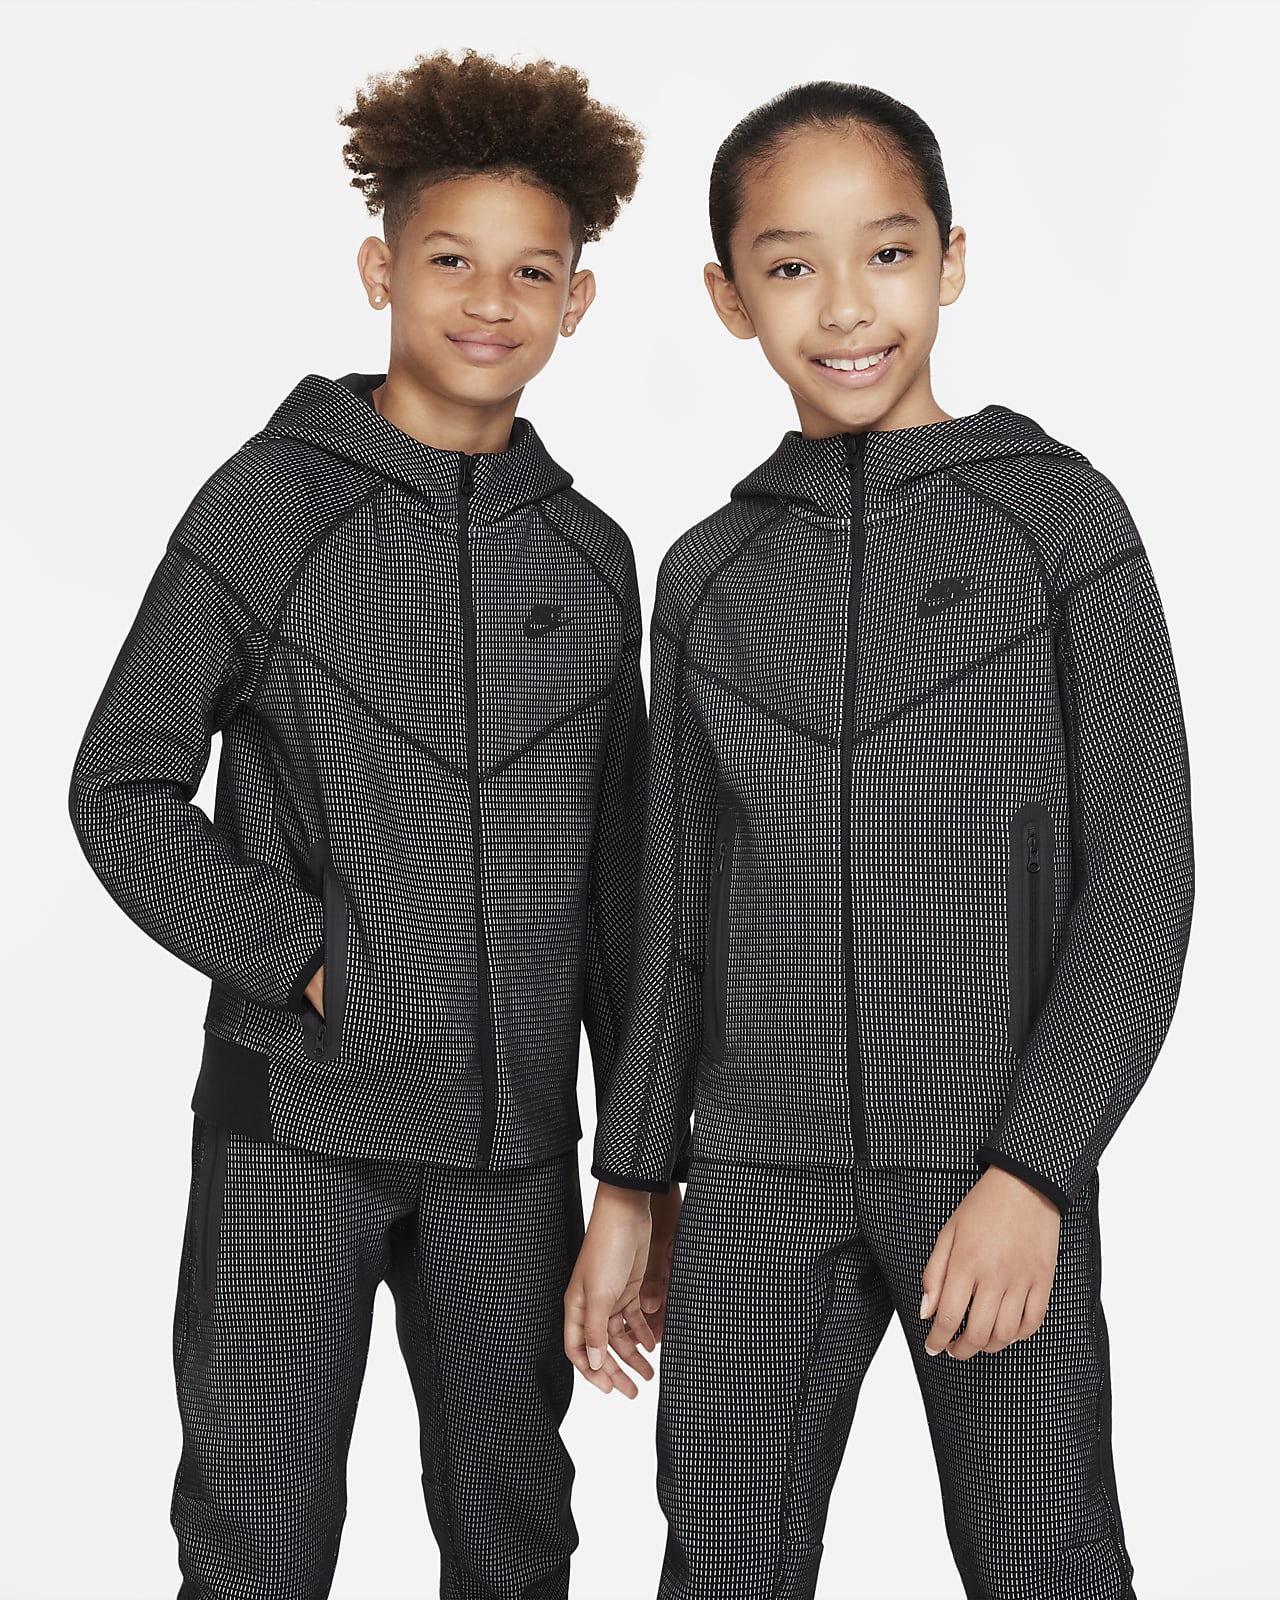 Bas de jogging Nike Sportswear Tech Fleece Bleu Marine pour Enfant